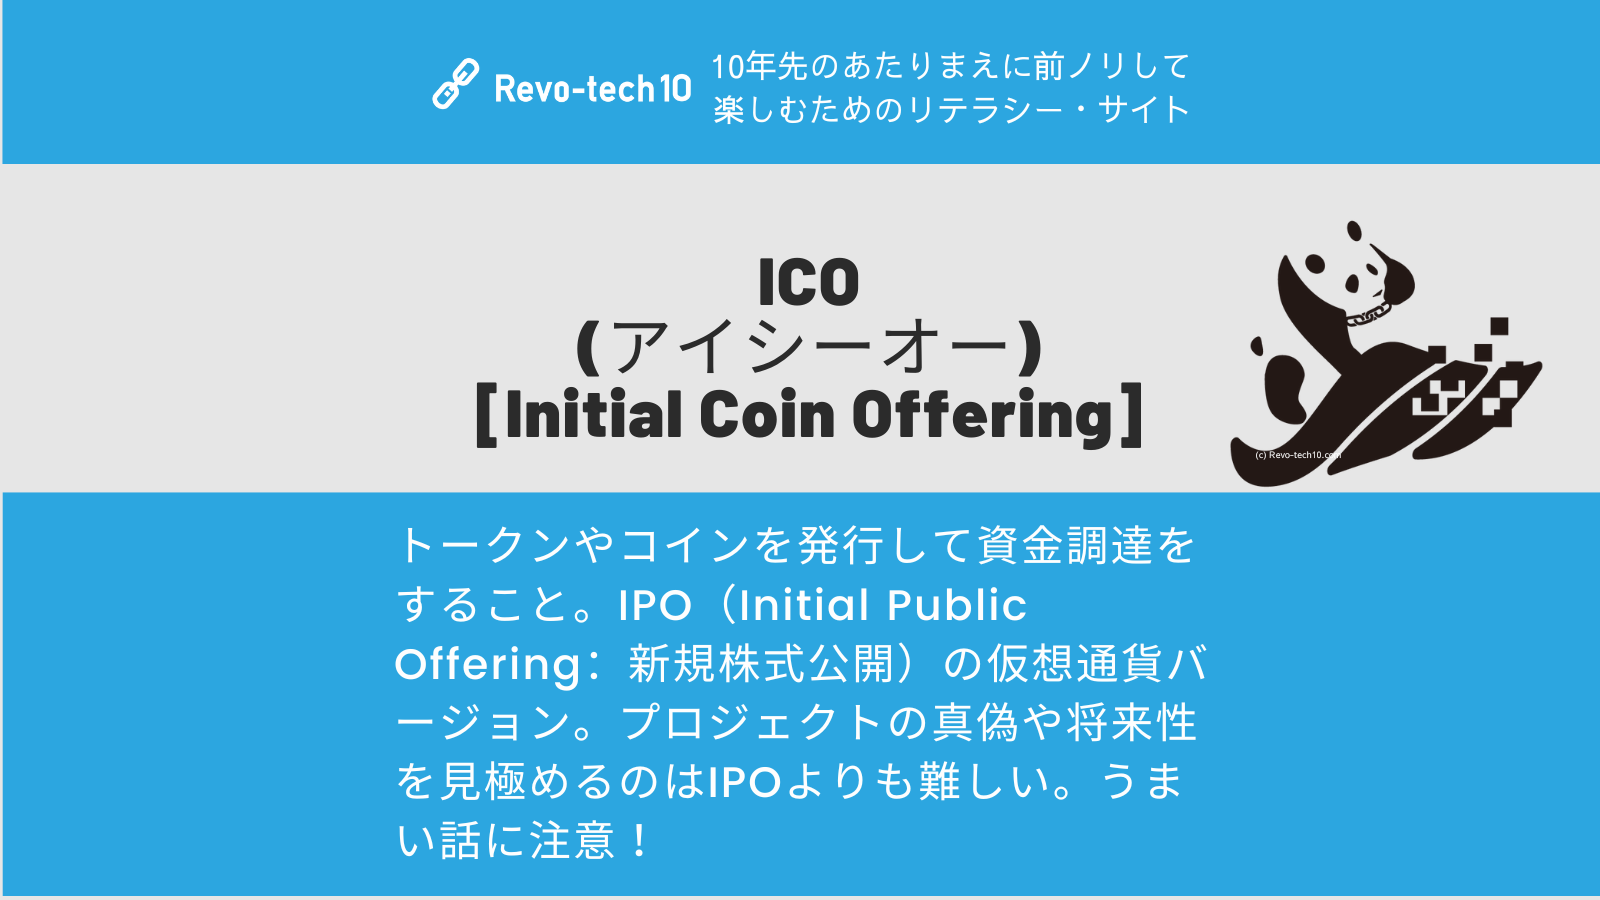 0063_ICO (アイシーオー) [Initial Coin Offering]0063_ICO (アイシーオー) [Initial Coin Offering]とは、トークンやコインを発行して資金調達をすること。